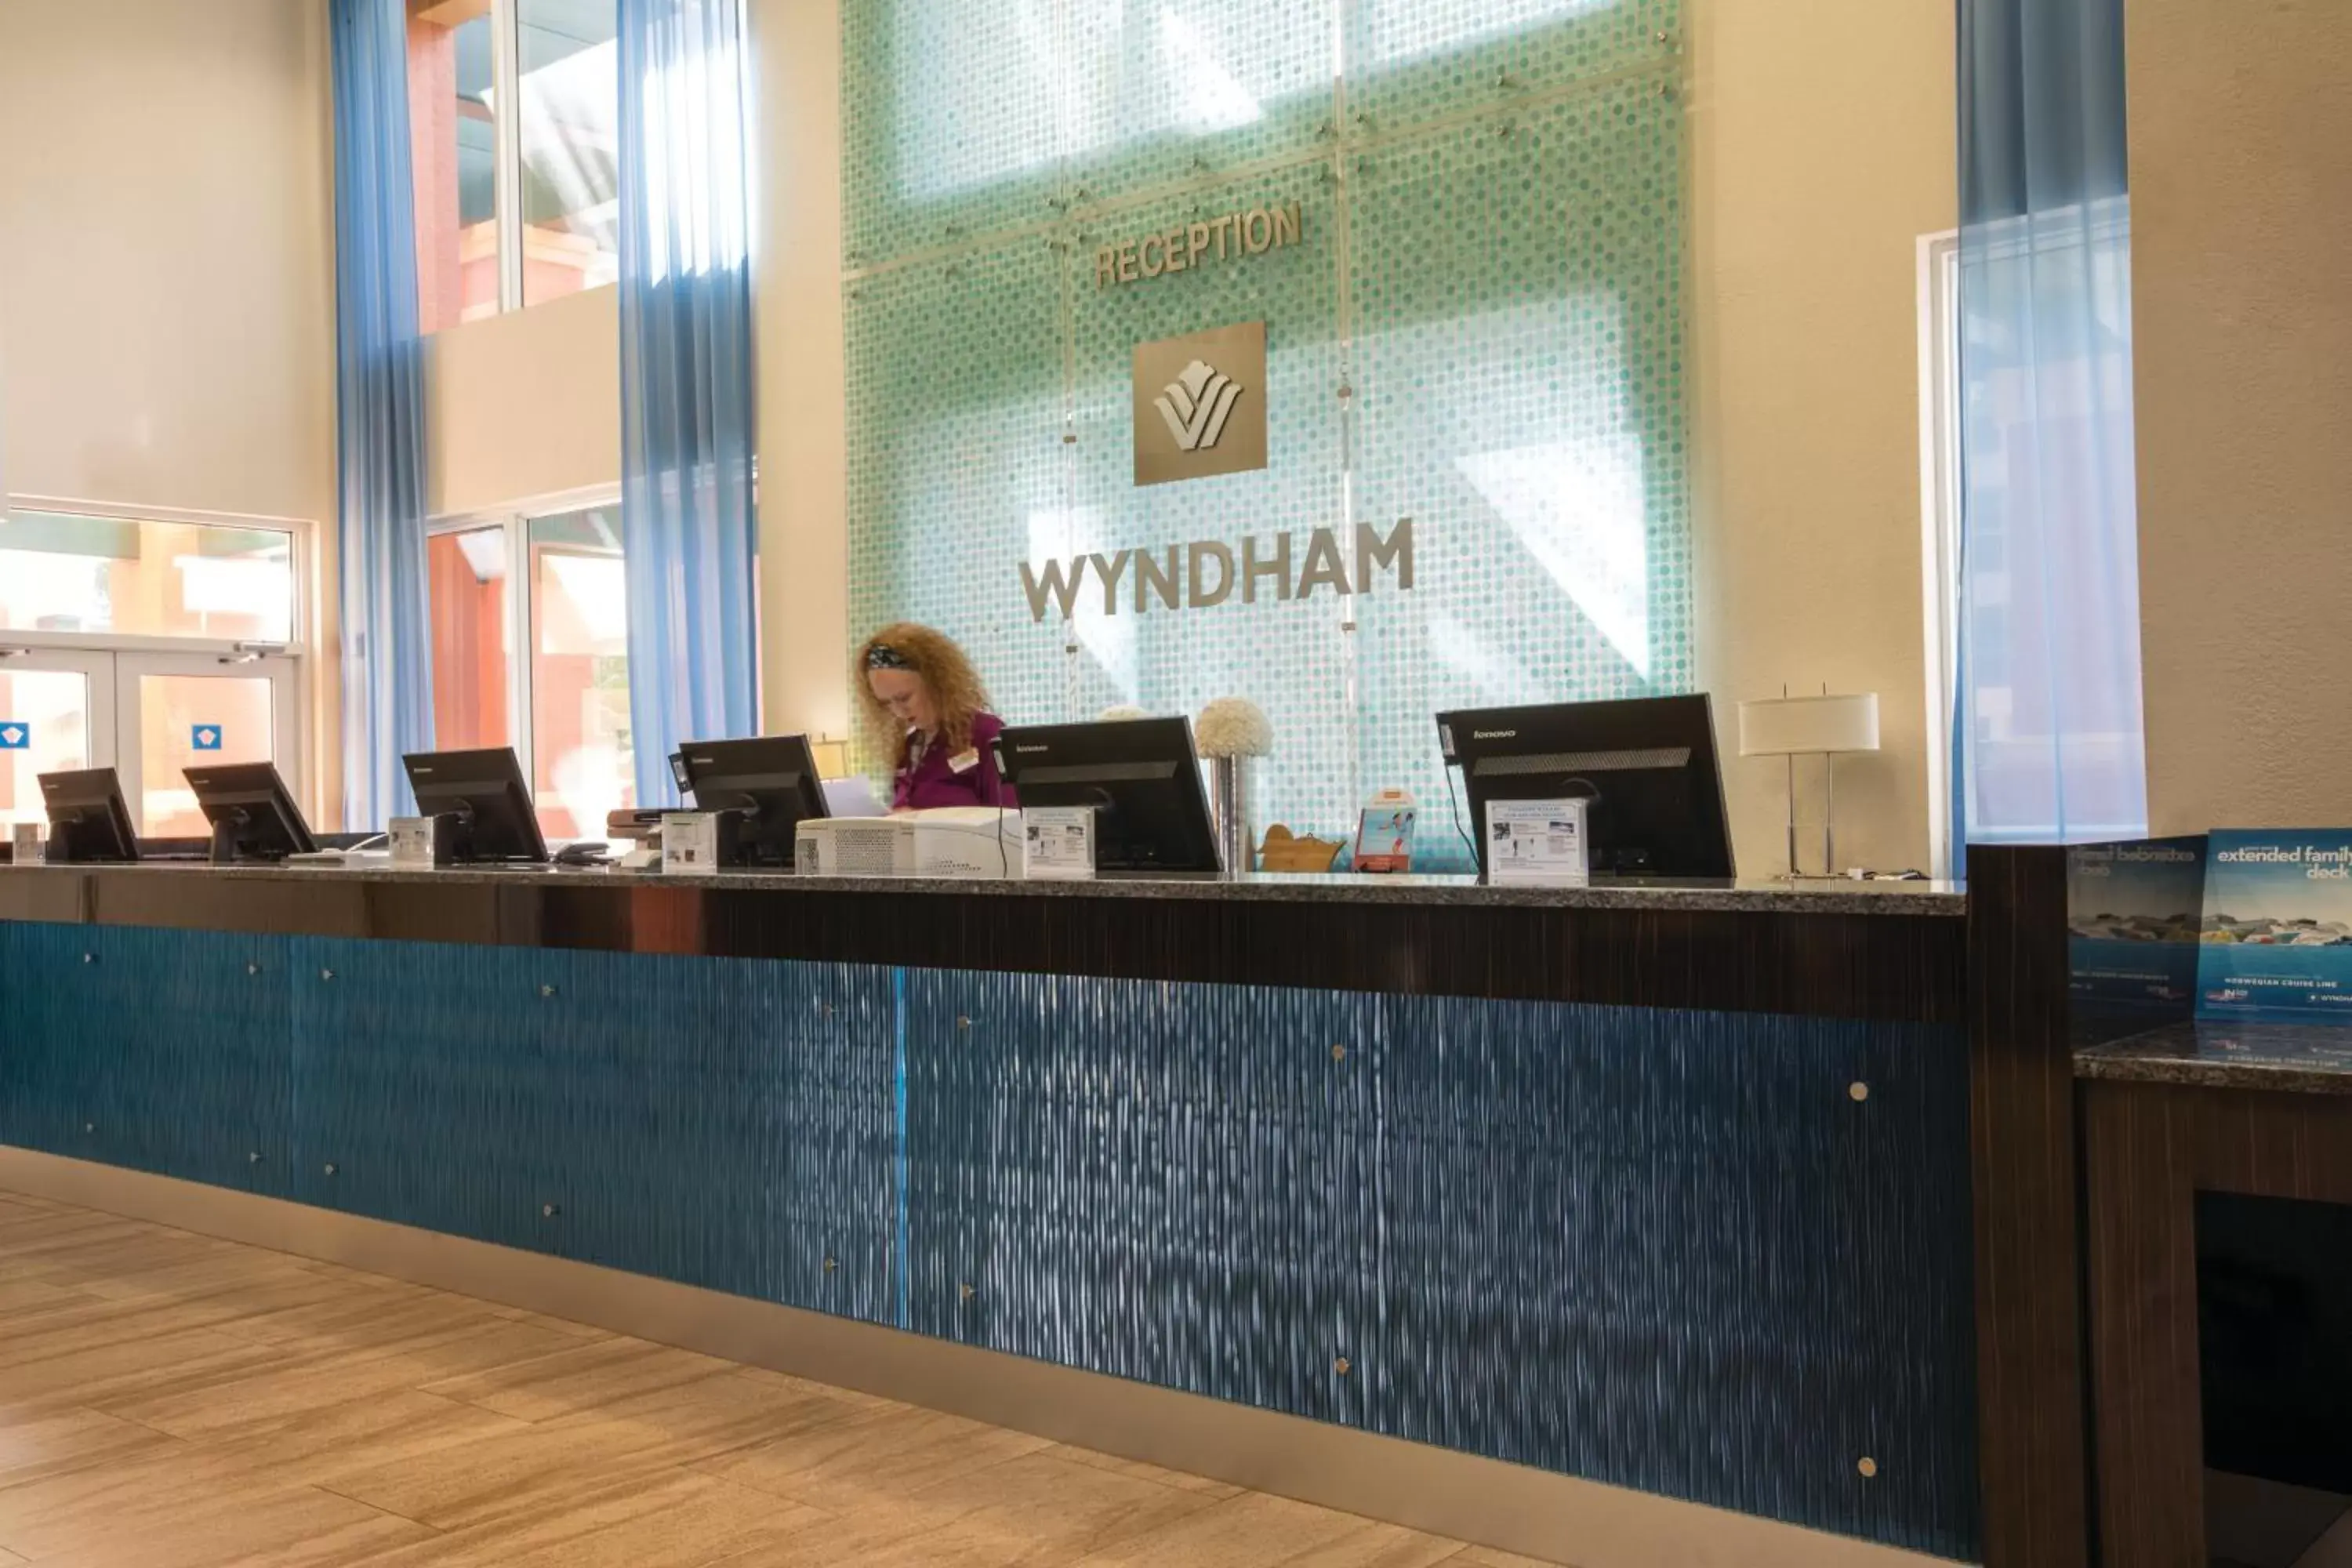 Lobby or reception in Club Wyndham Palm-Aire